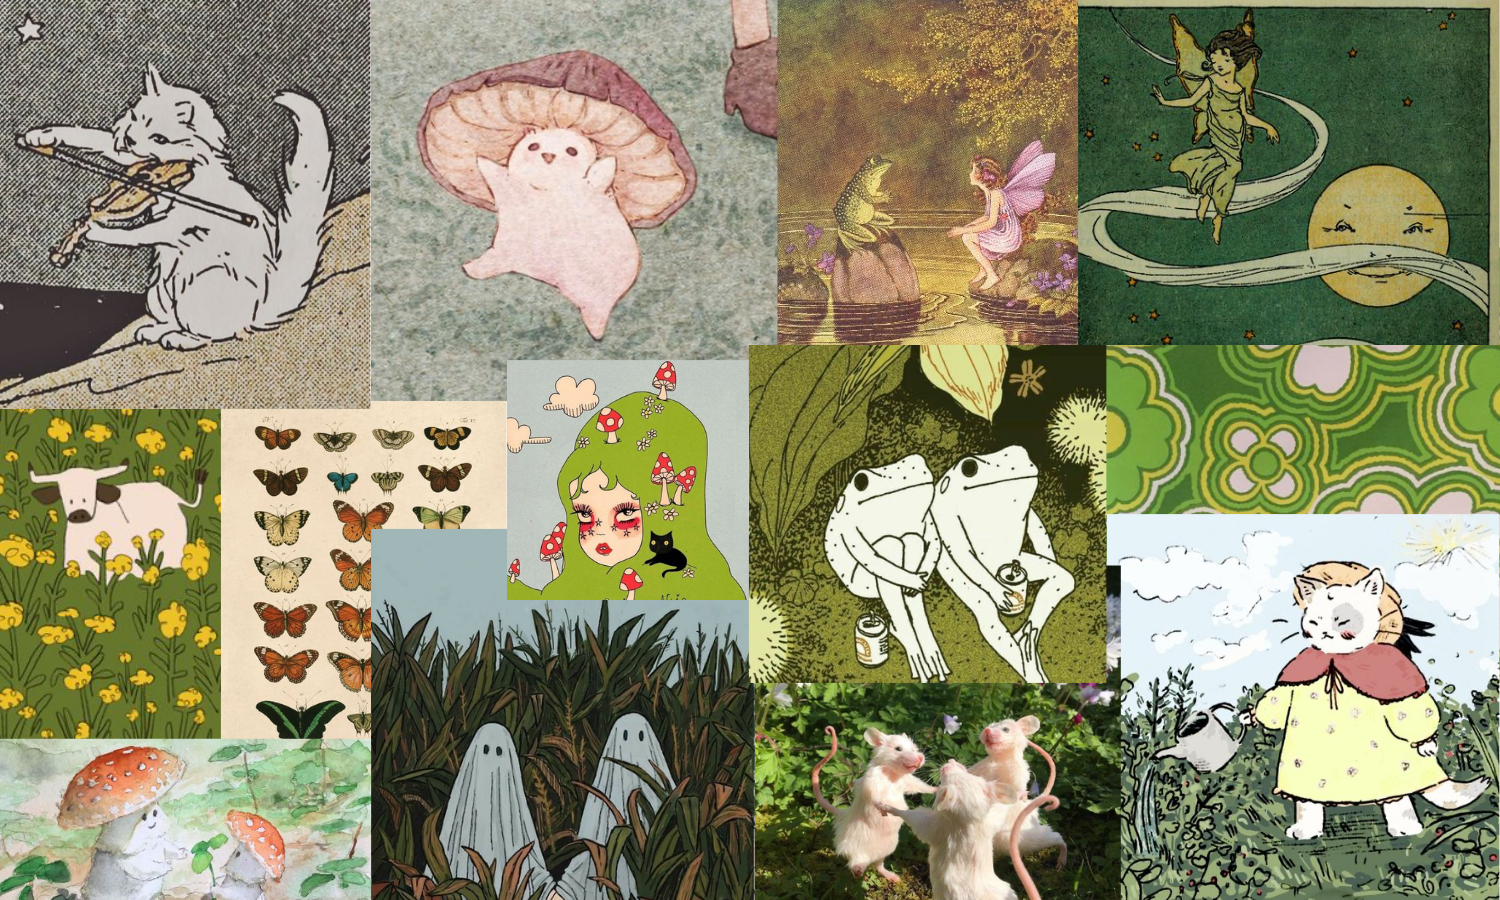 Green Hippie Indie Wallpaper Collage. Fairy Wallpaper, Frog Wallpaper, Pretty Wallpaper Iphone